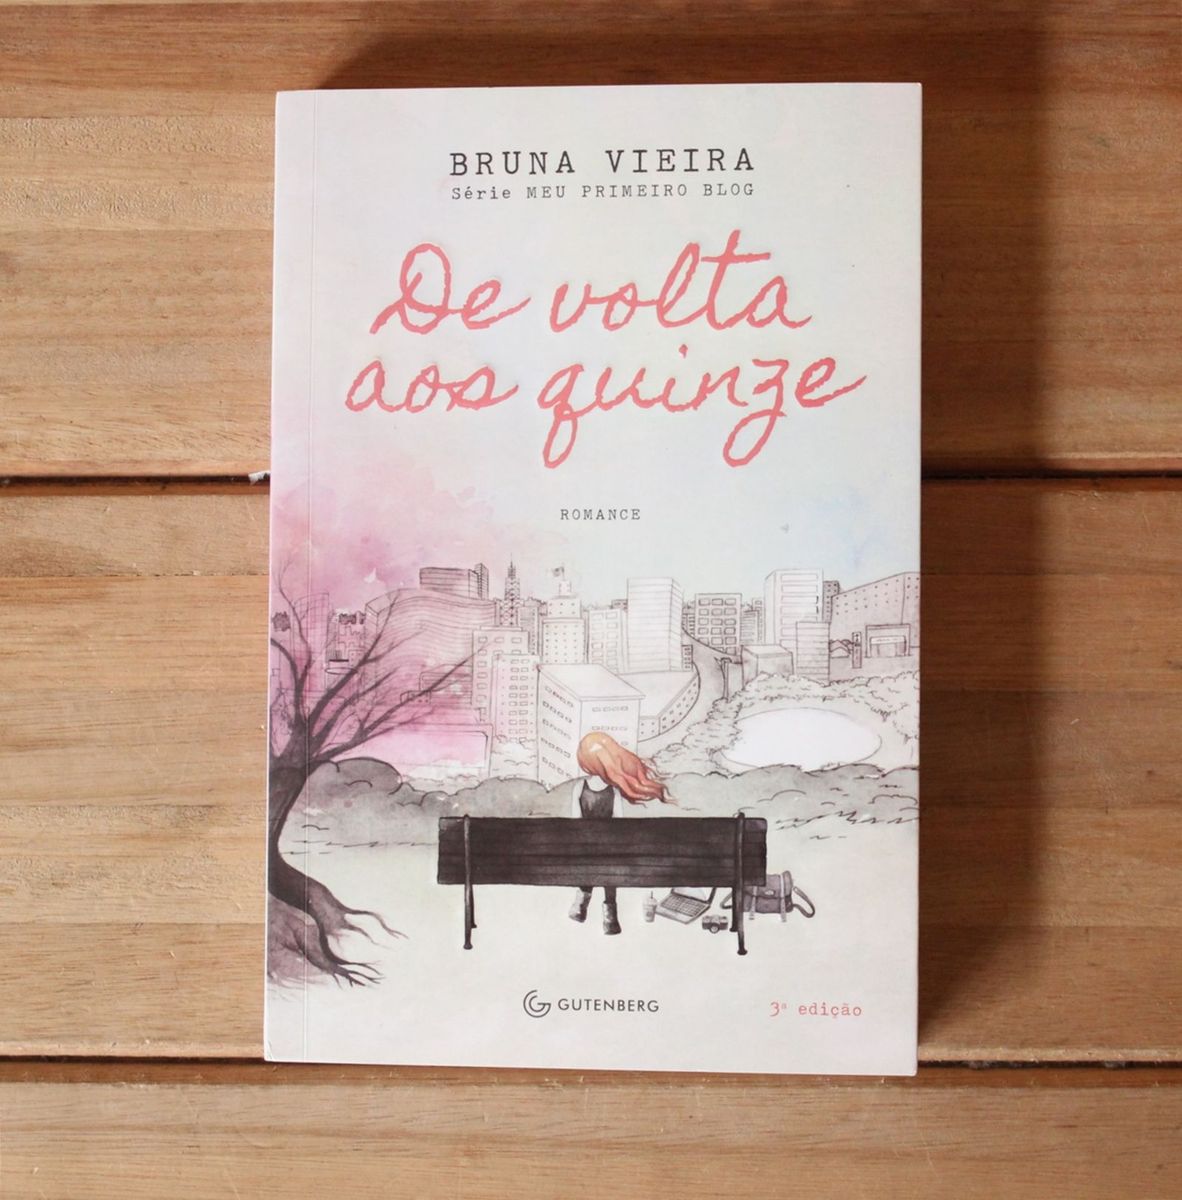 Livro de Volta Aos 15 - Bruna Vieira | Livro Ed Gutenberg Nunca Usado